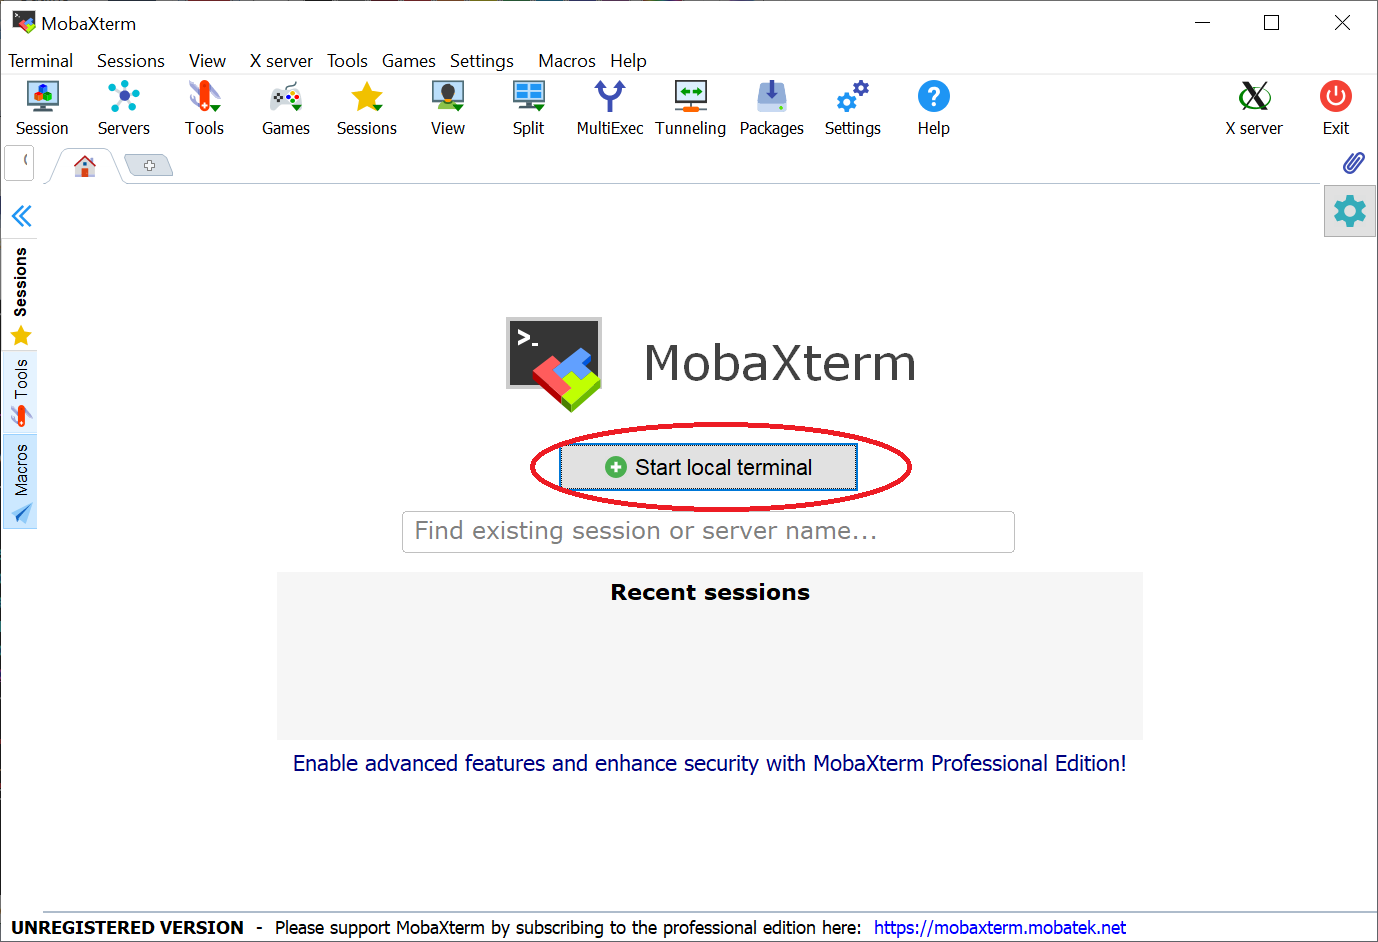 MobaXterm: Button "Start local terminal"